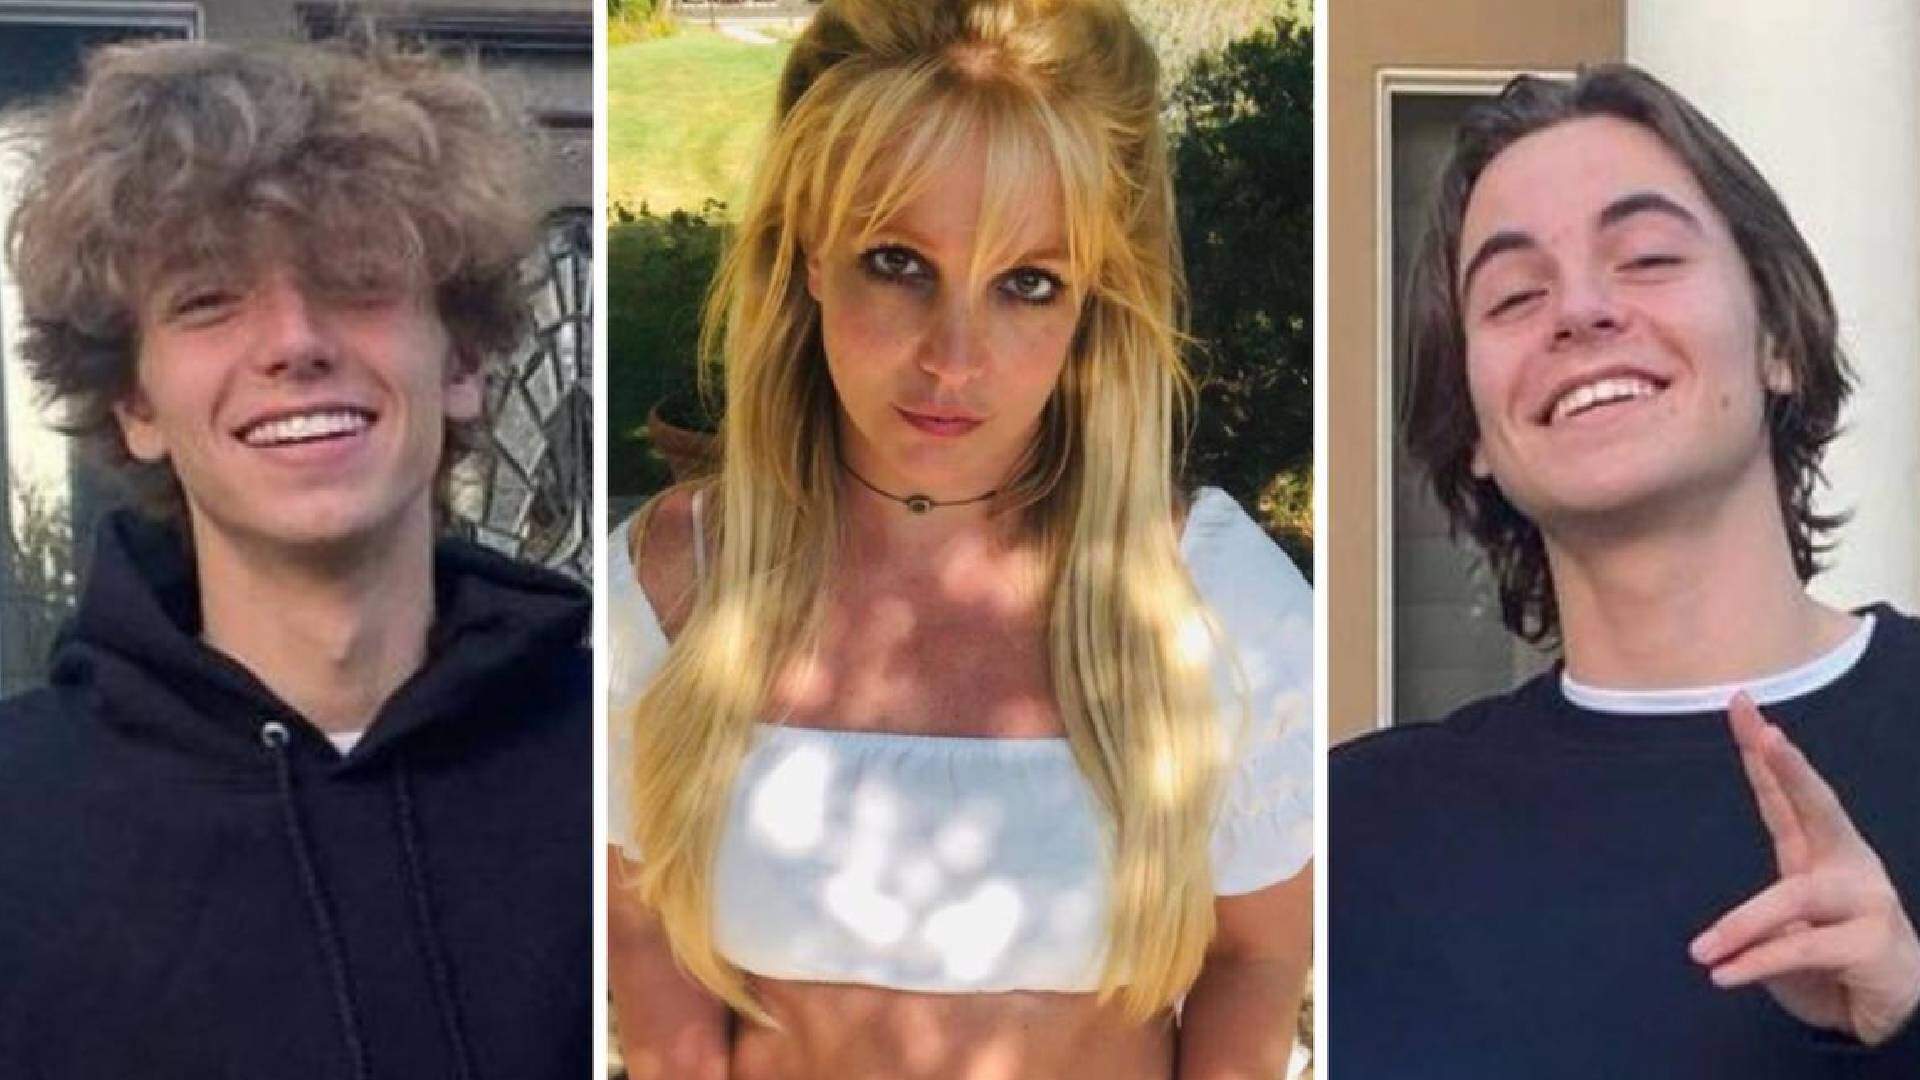 Brigados? Filhos de Britney Spears tomam atitude polêmica com a própria mãe e detalhe triste vem à tona